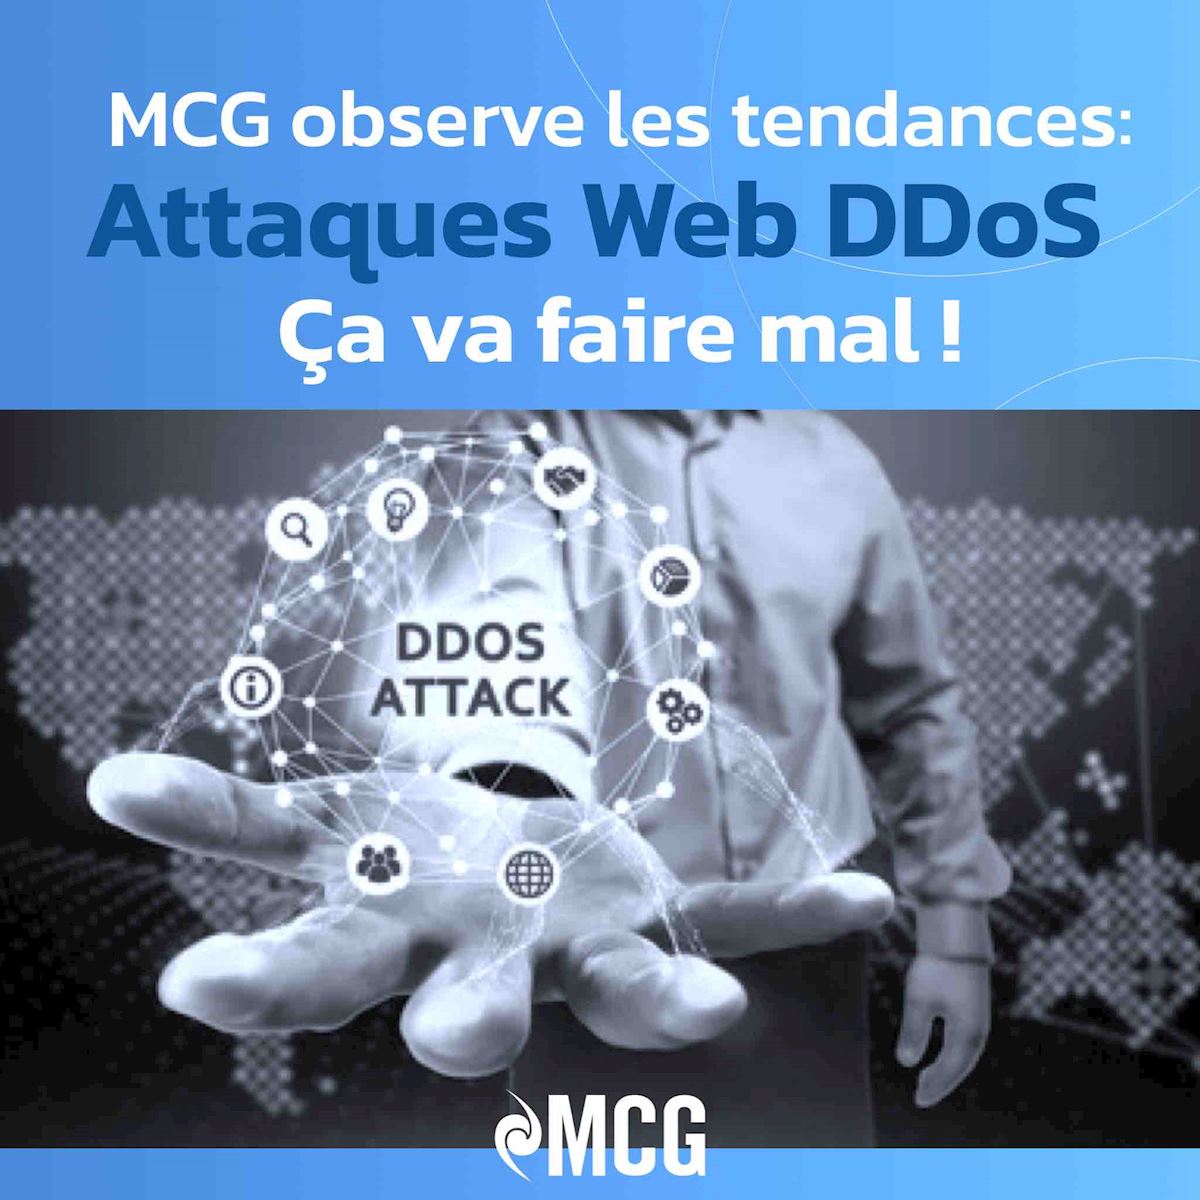 MCG observe les tendances: attaques WEB DDoS ... ça va faire mal !